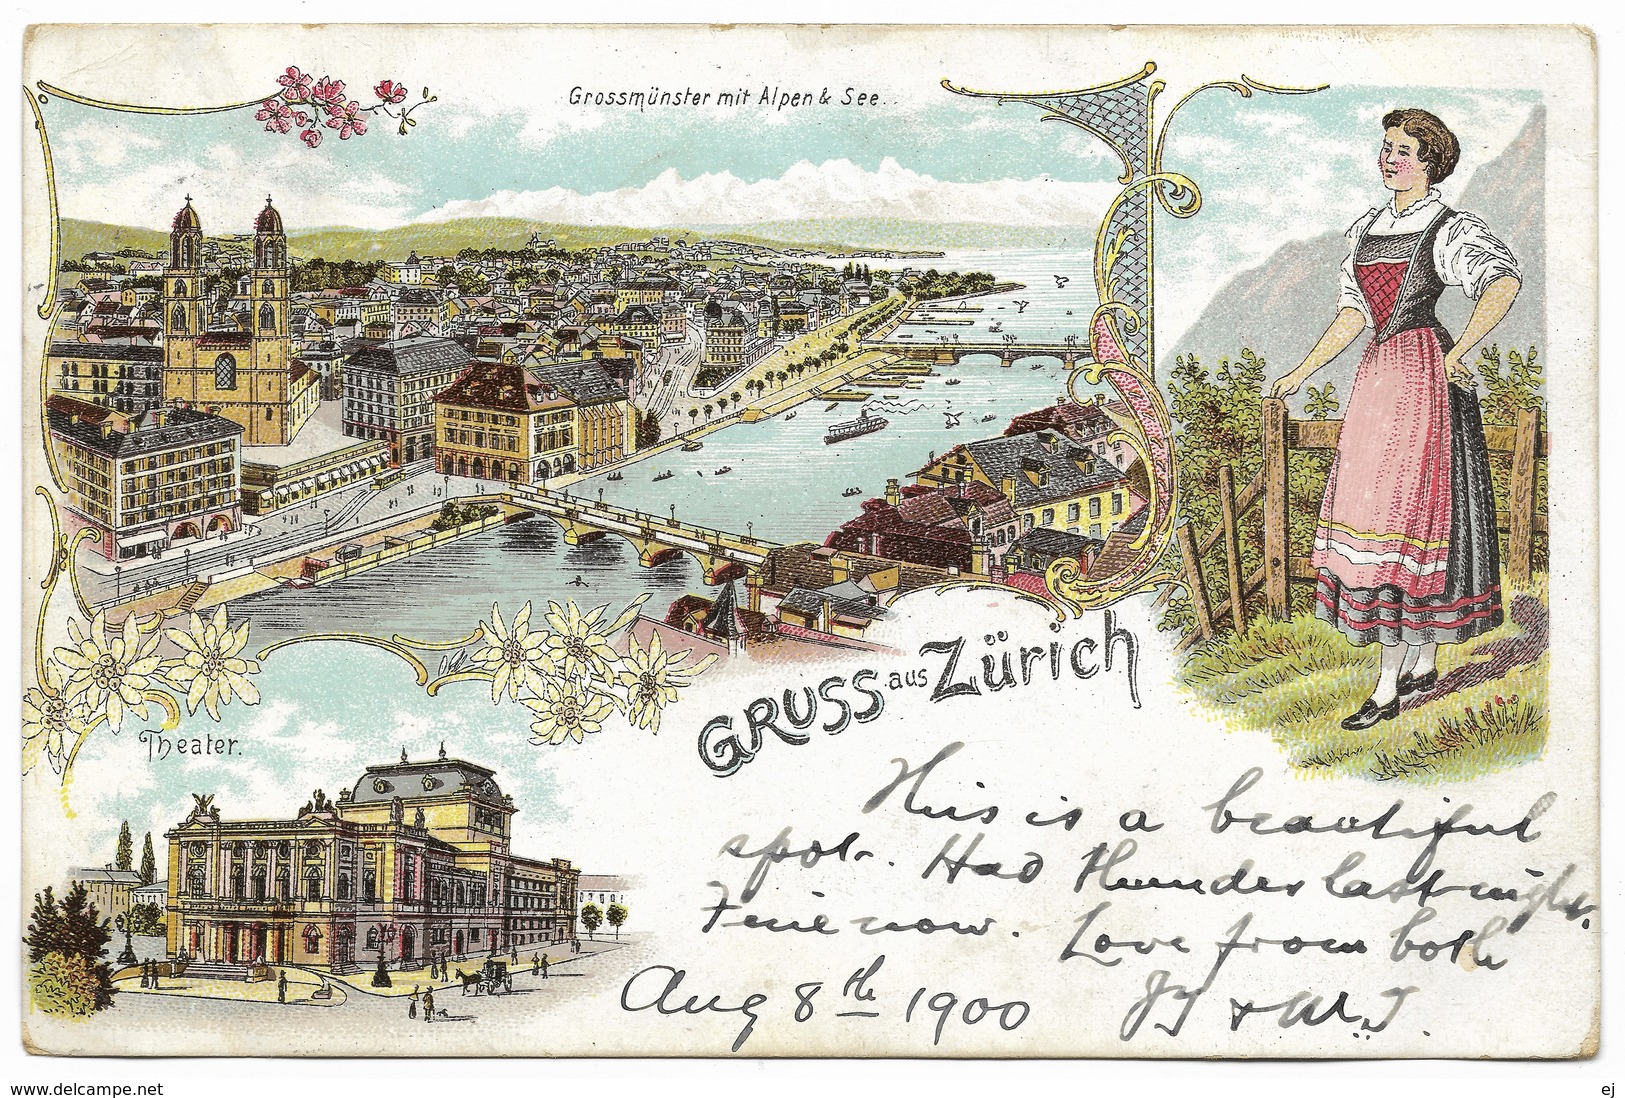 Gruss Aus Zurich Grassmünster Mit Alpen & See Theatre – Postmark 1900 - Greetings From...